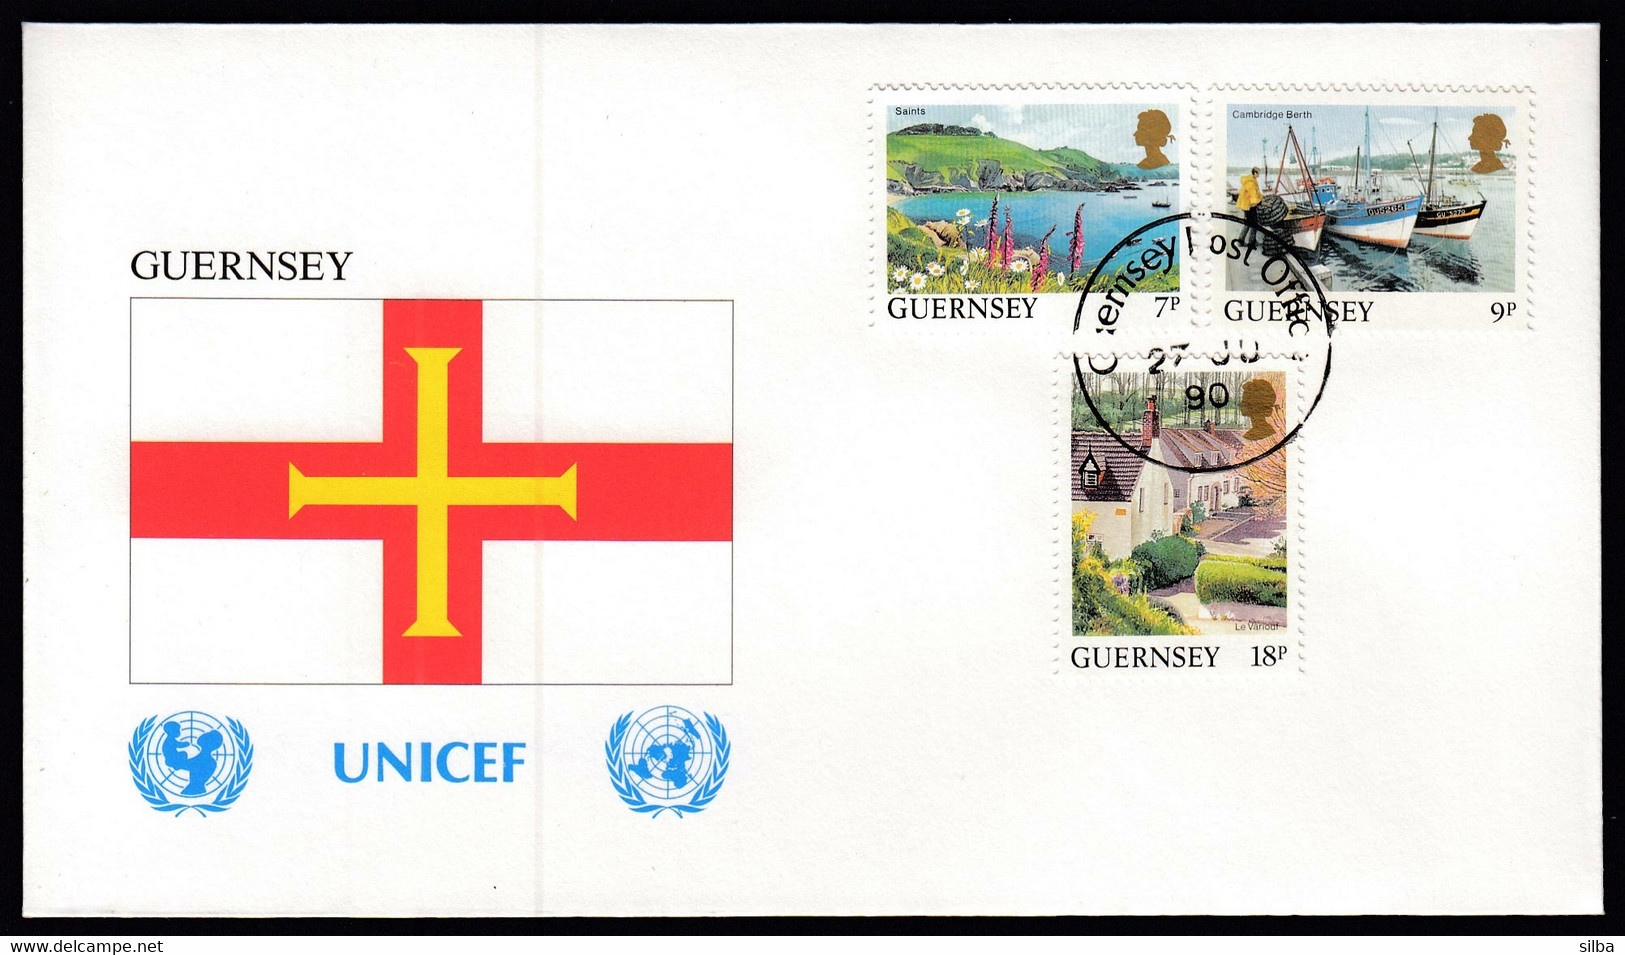 Guernsey 1990 / Flag, Flags / UNICEF / Saints, Cambridge Berth, Le Variout - Covers